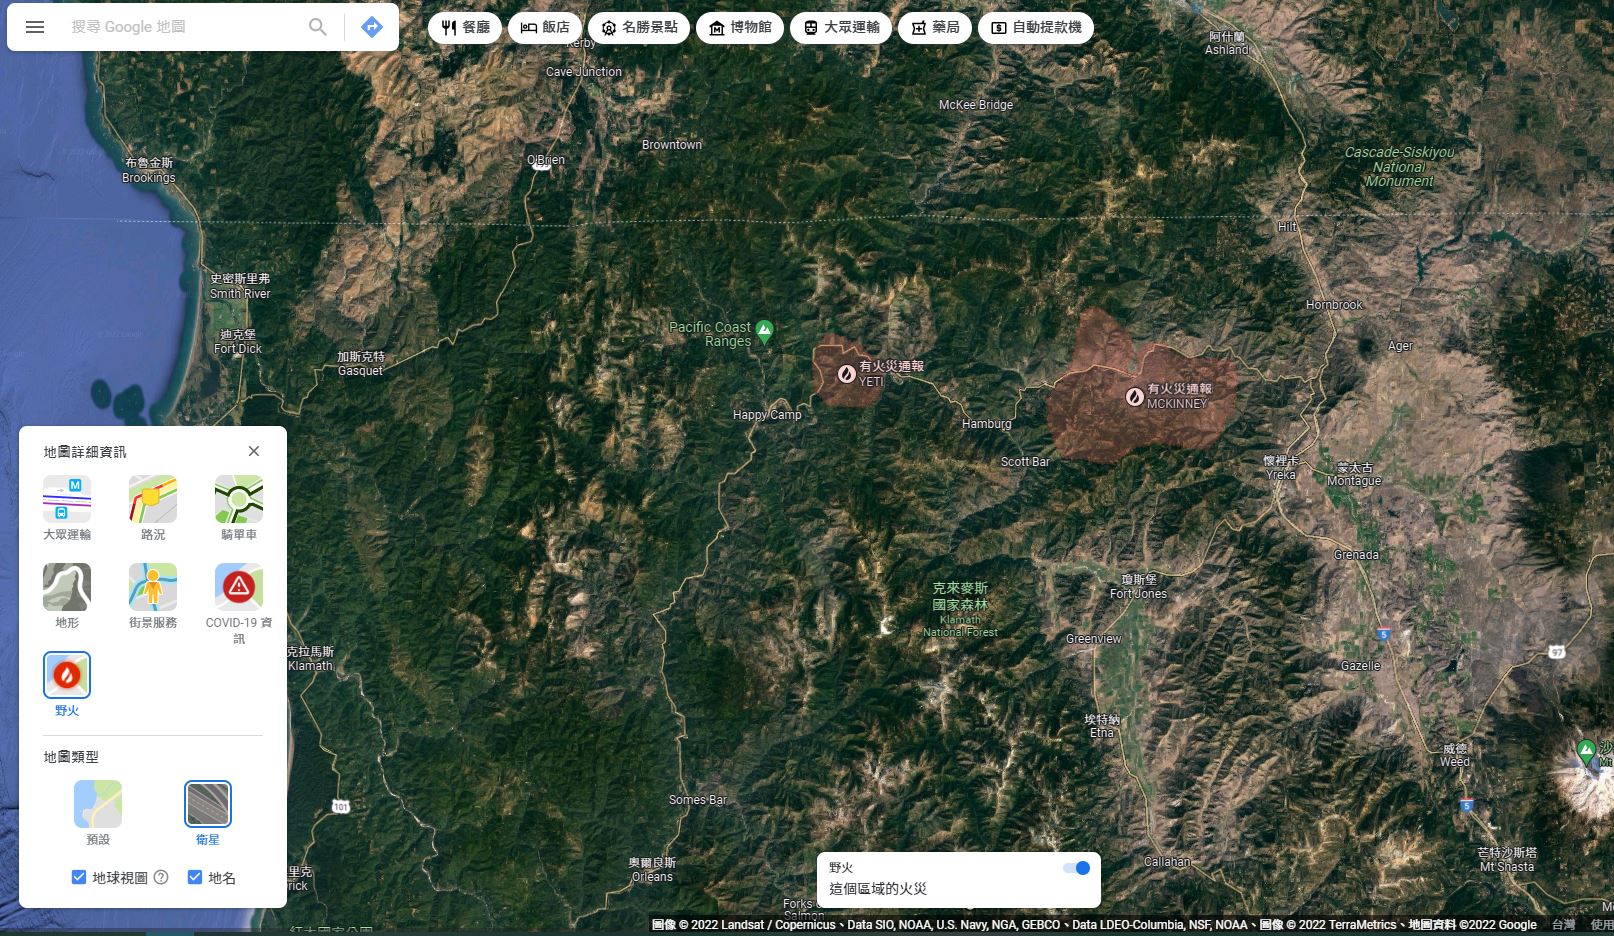 圖8、McKinney森林野火警戒區域展示 (Google地圖)